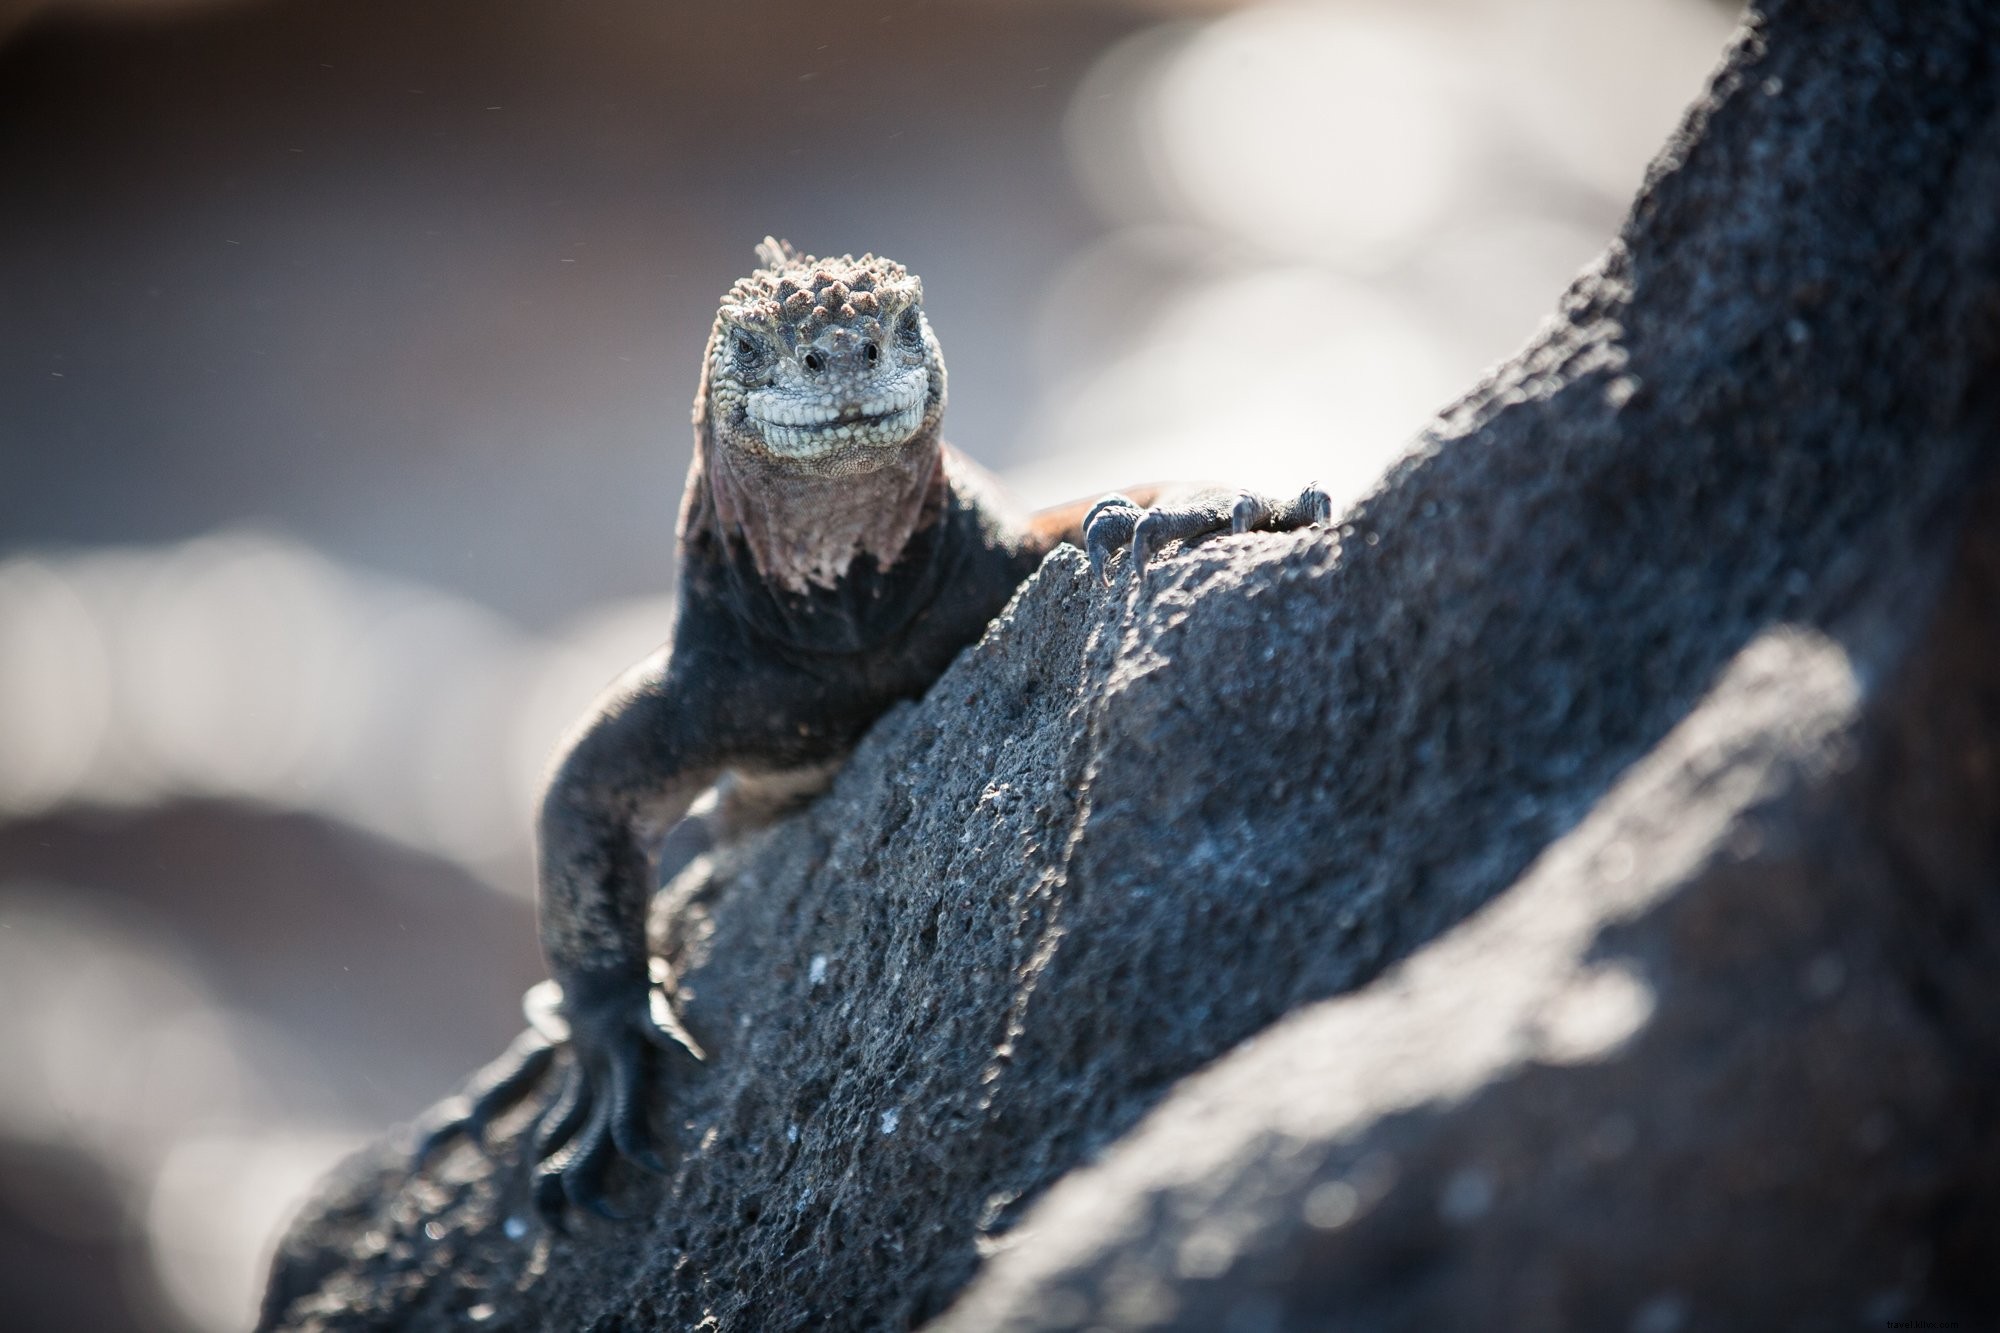 Reptile sourire sur Rock Photo